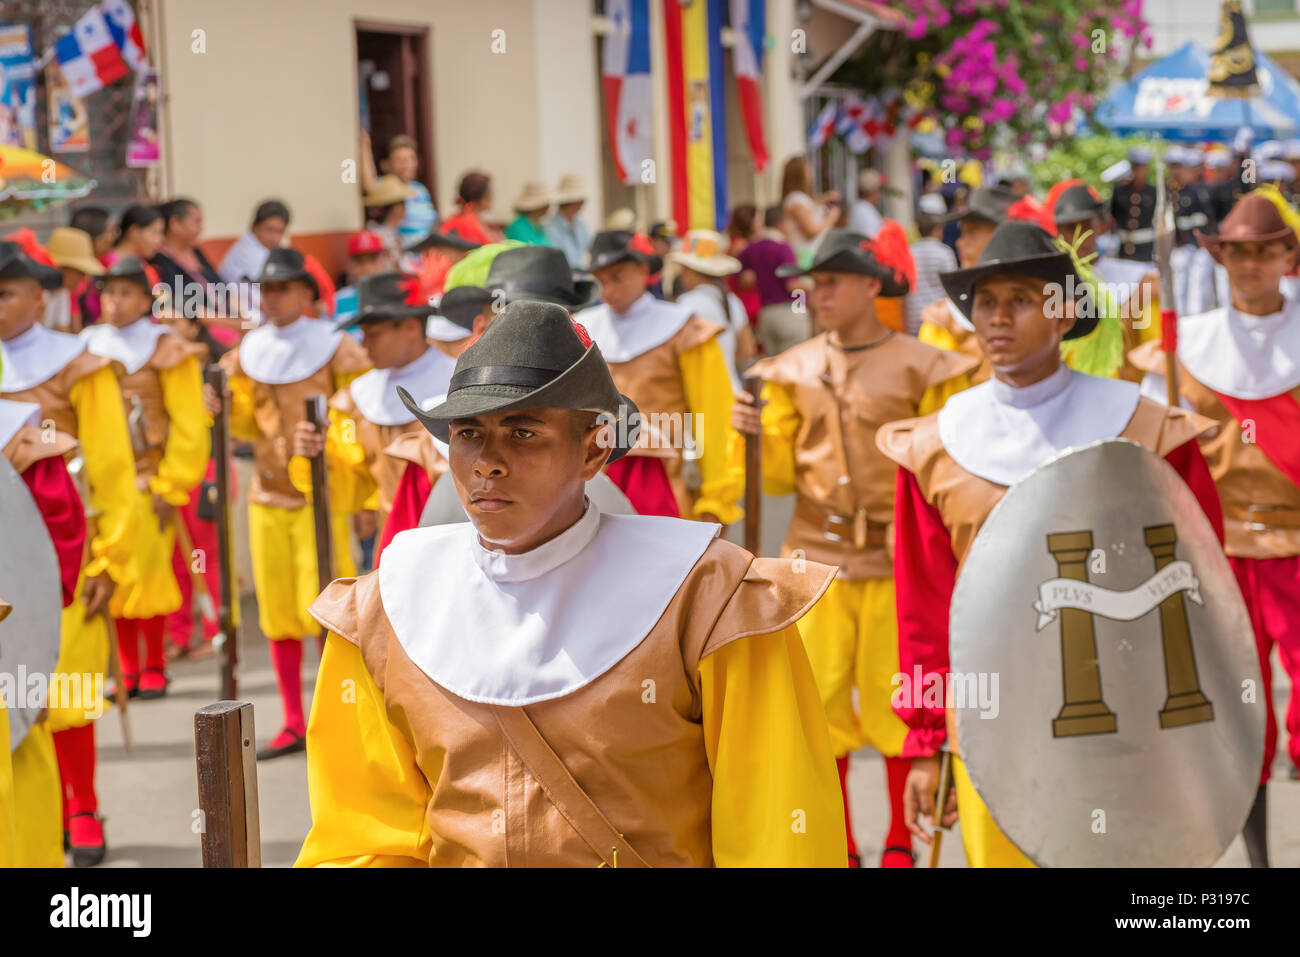 Los Santos, Panama - November 10, 2015: Festival and parade in La Villa commemorates La Grita de la Independencia. Held every November 10, this festiv Stock Photo